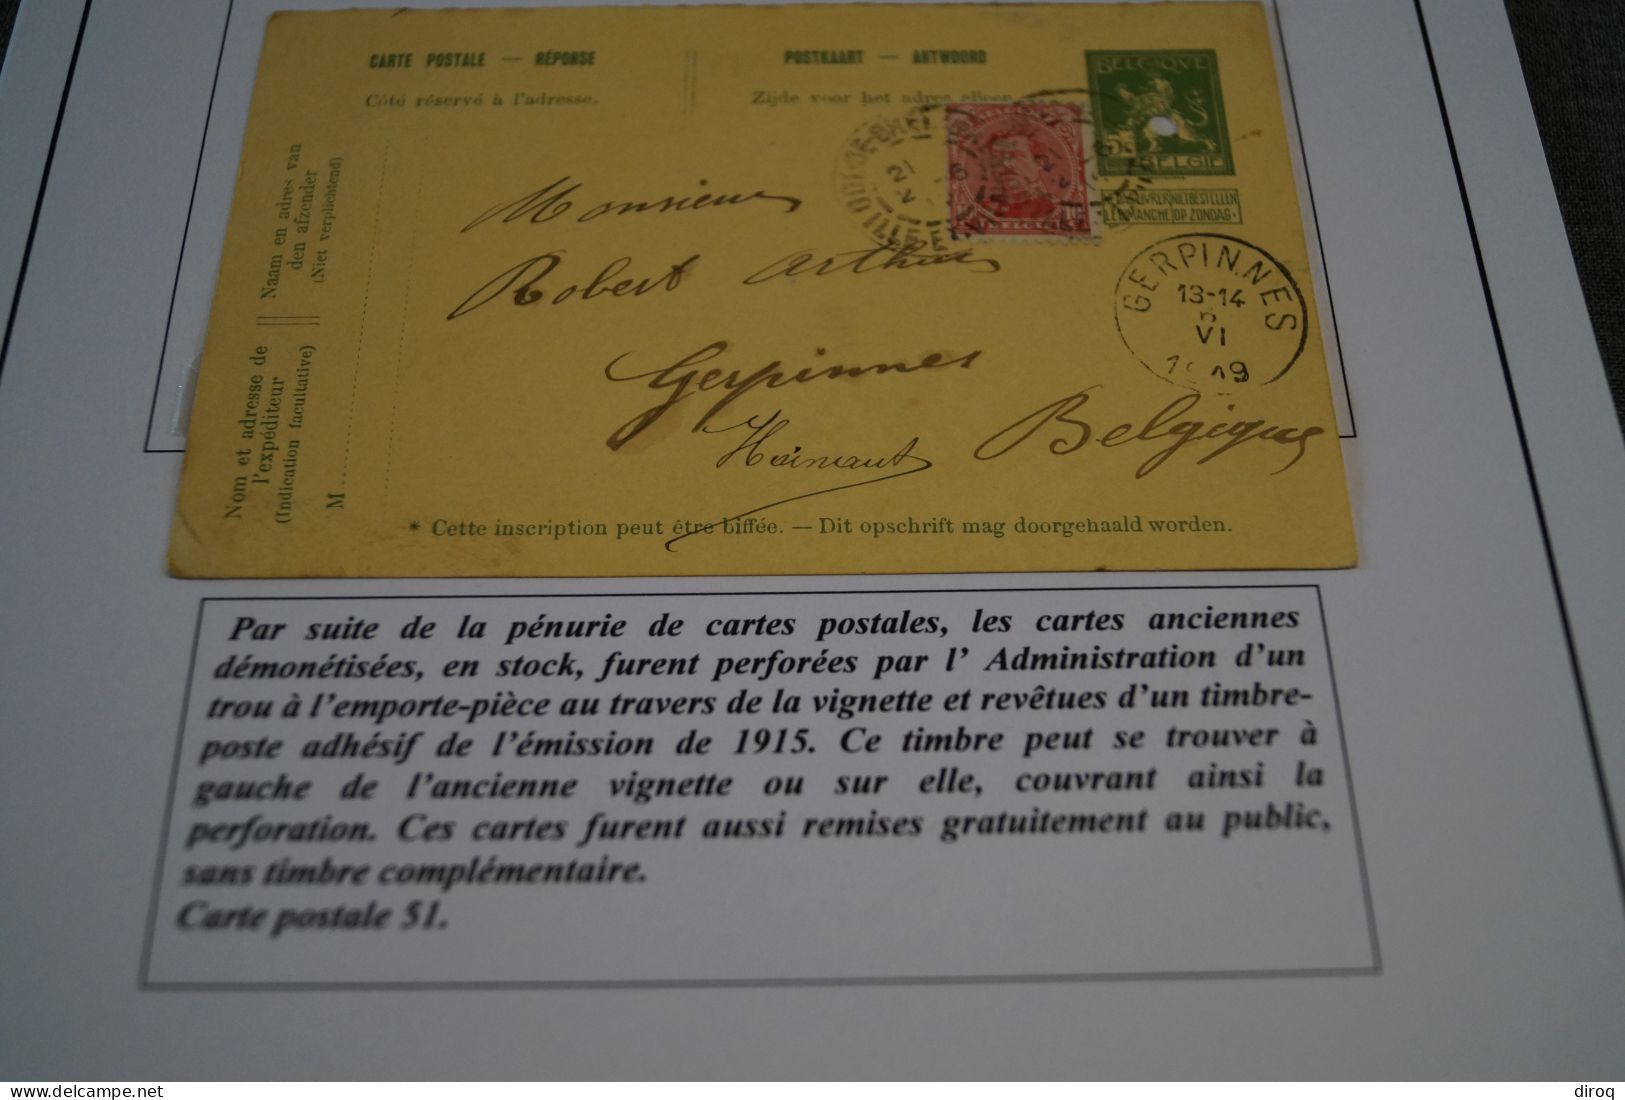 Emission De Fortune 1919 , N° 51 ,perforé ,état Pour Collection Voir Photos - Briefkaarten 1909-1934